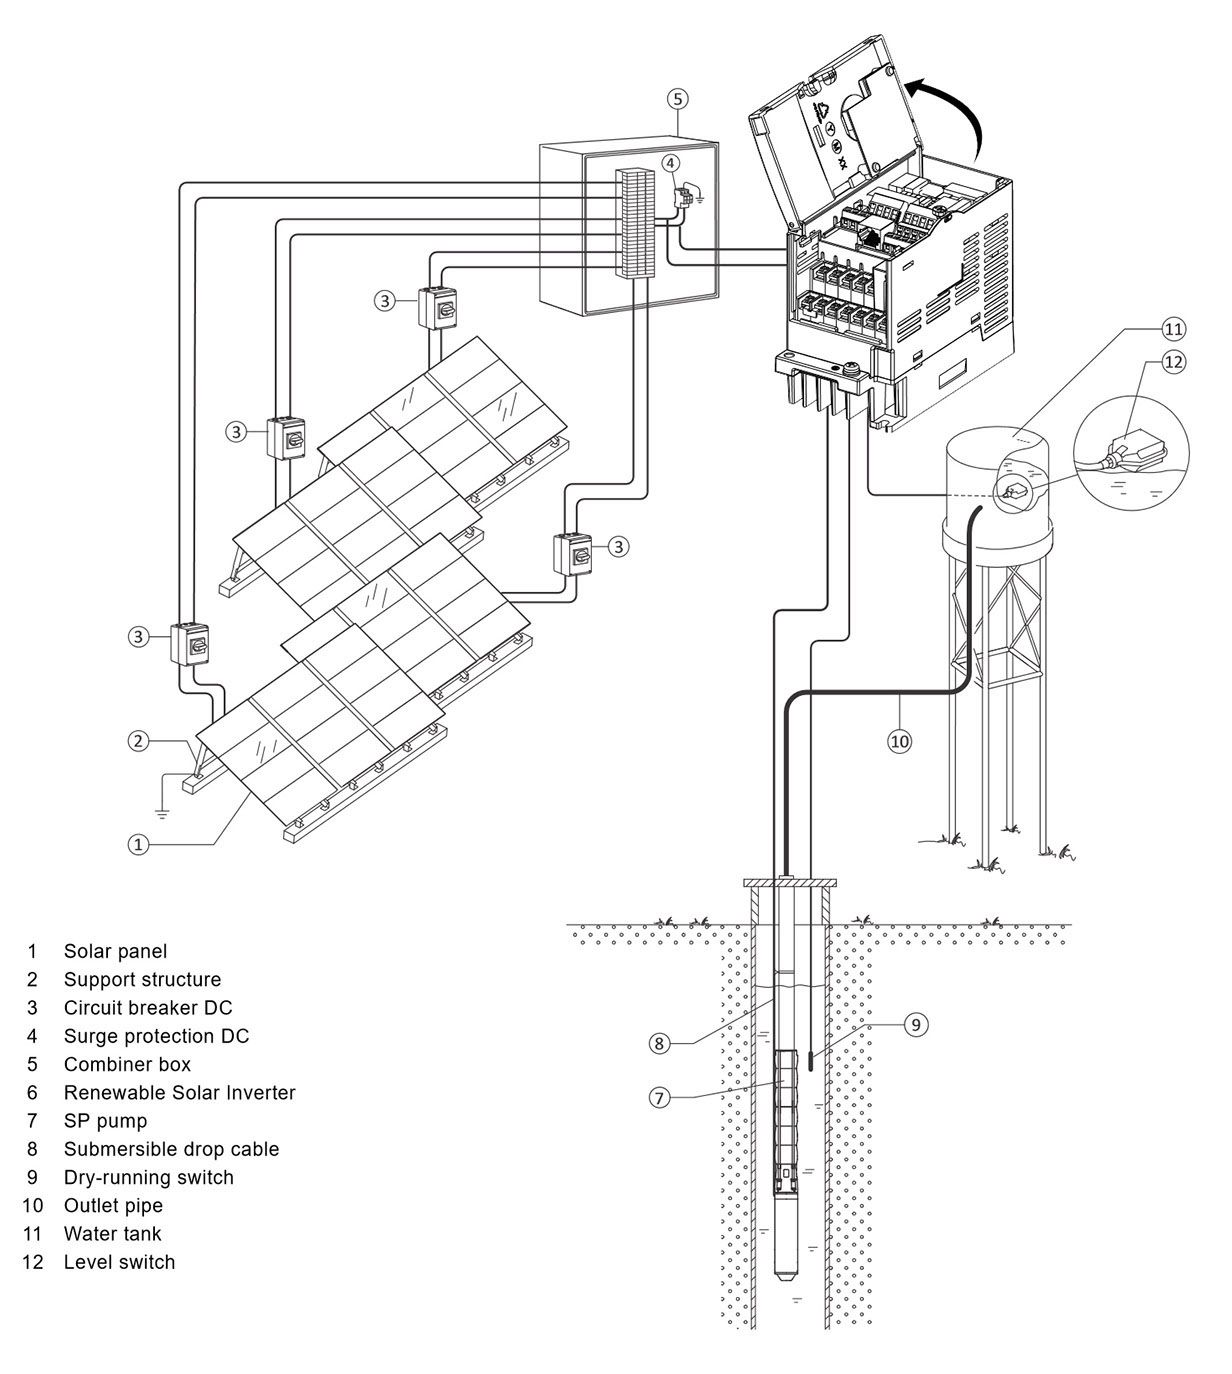 SINES - solar pump inverter - Altivar 312 solar